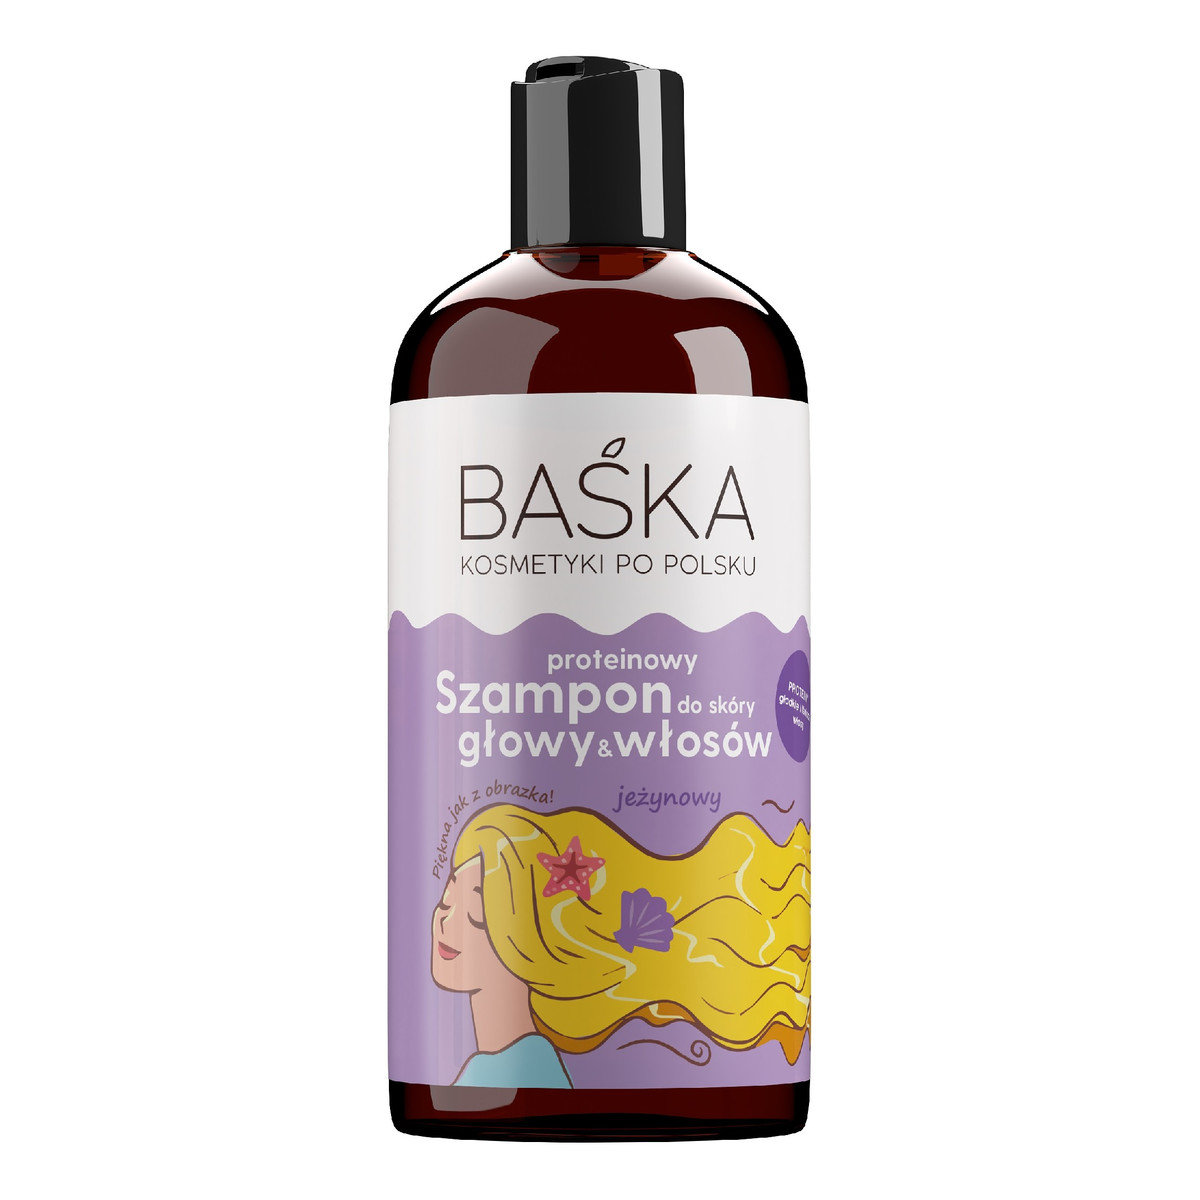 Baśka Kosmetyki po polsku proteinowy szampon do skóry głowy i włosów-jeżynowy 500ml